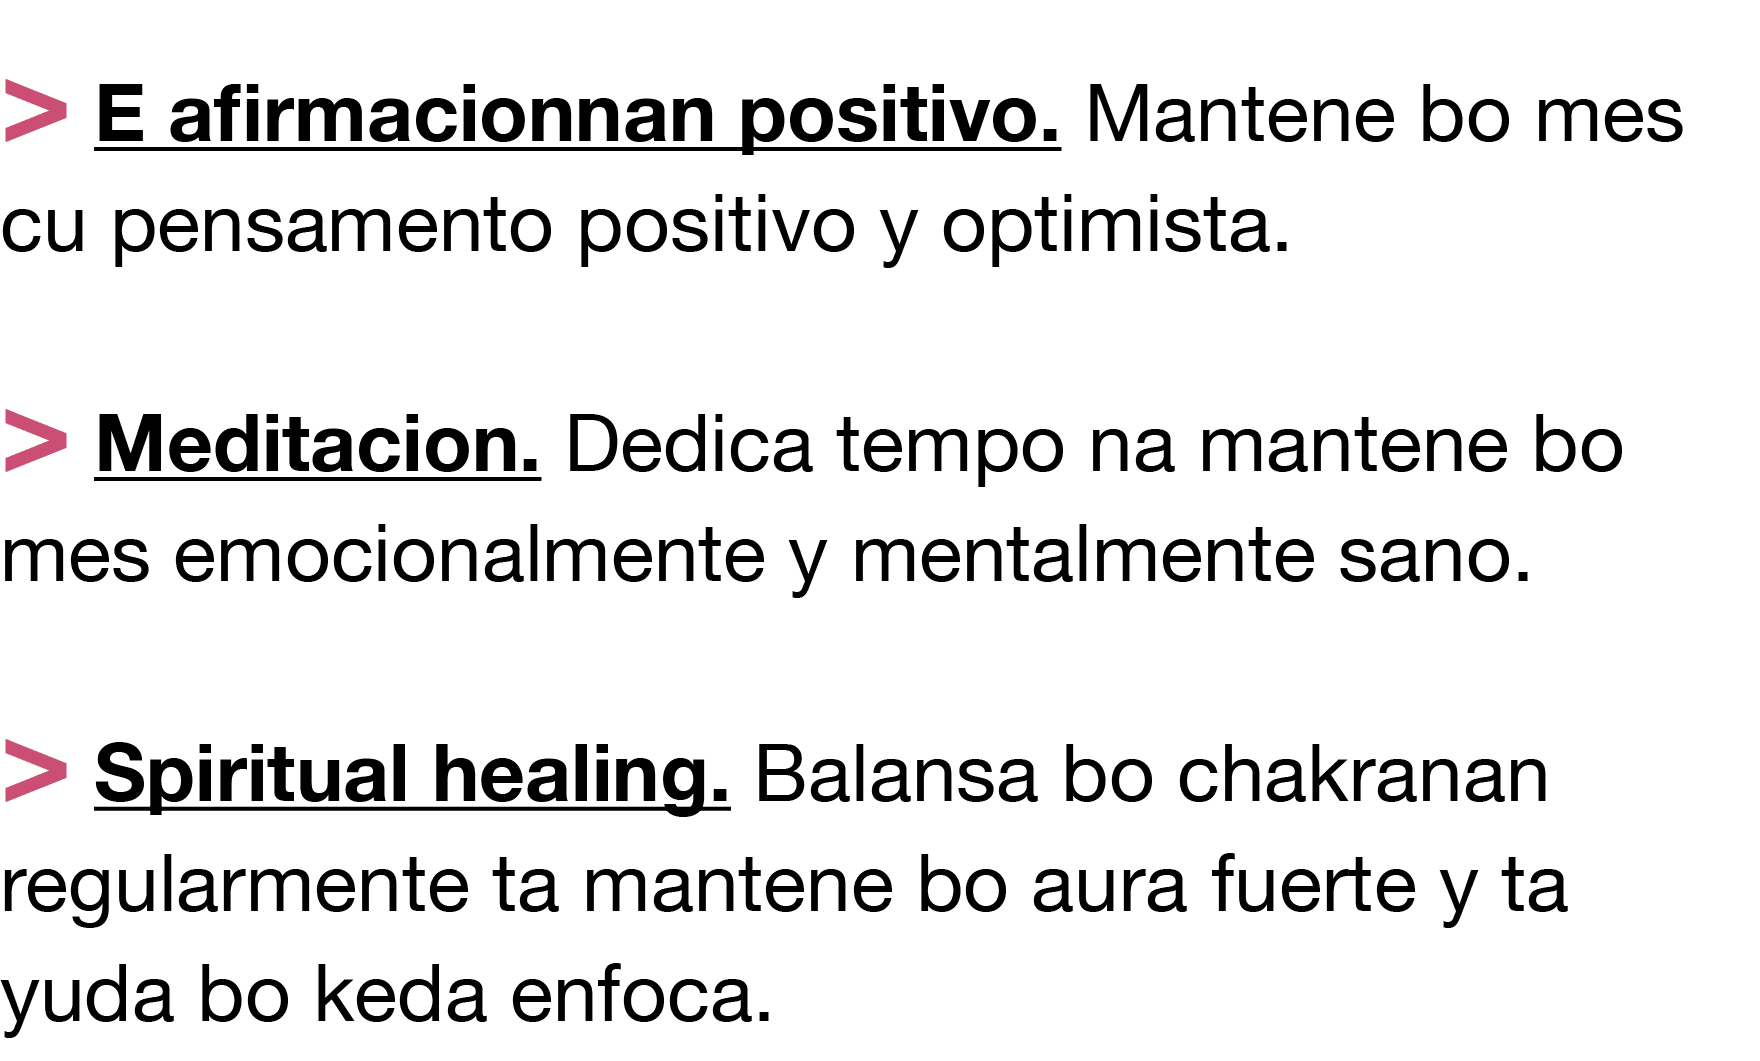   E afirmacionnan positivo  Mantene bo mes cu pensamento positivo y optimista     Meditacion  Dedica tempo na mantene   